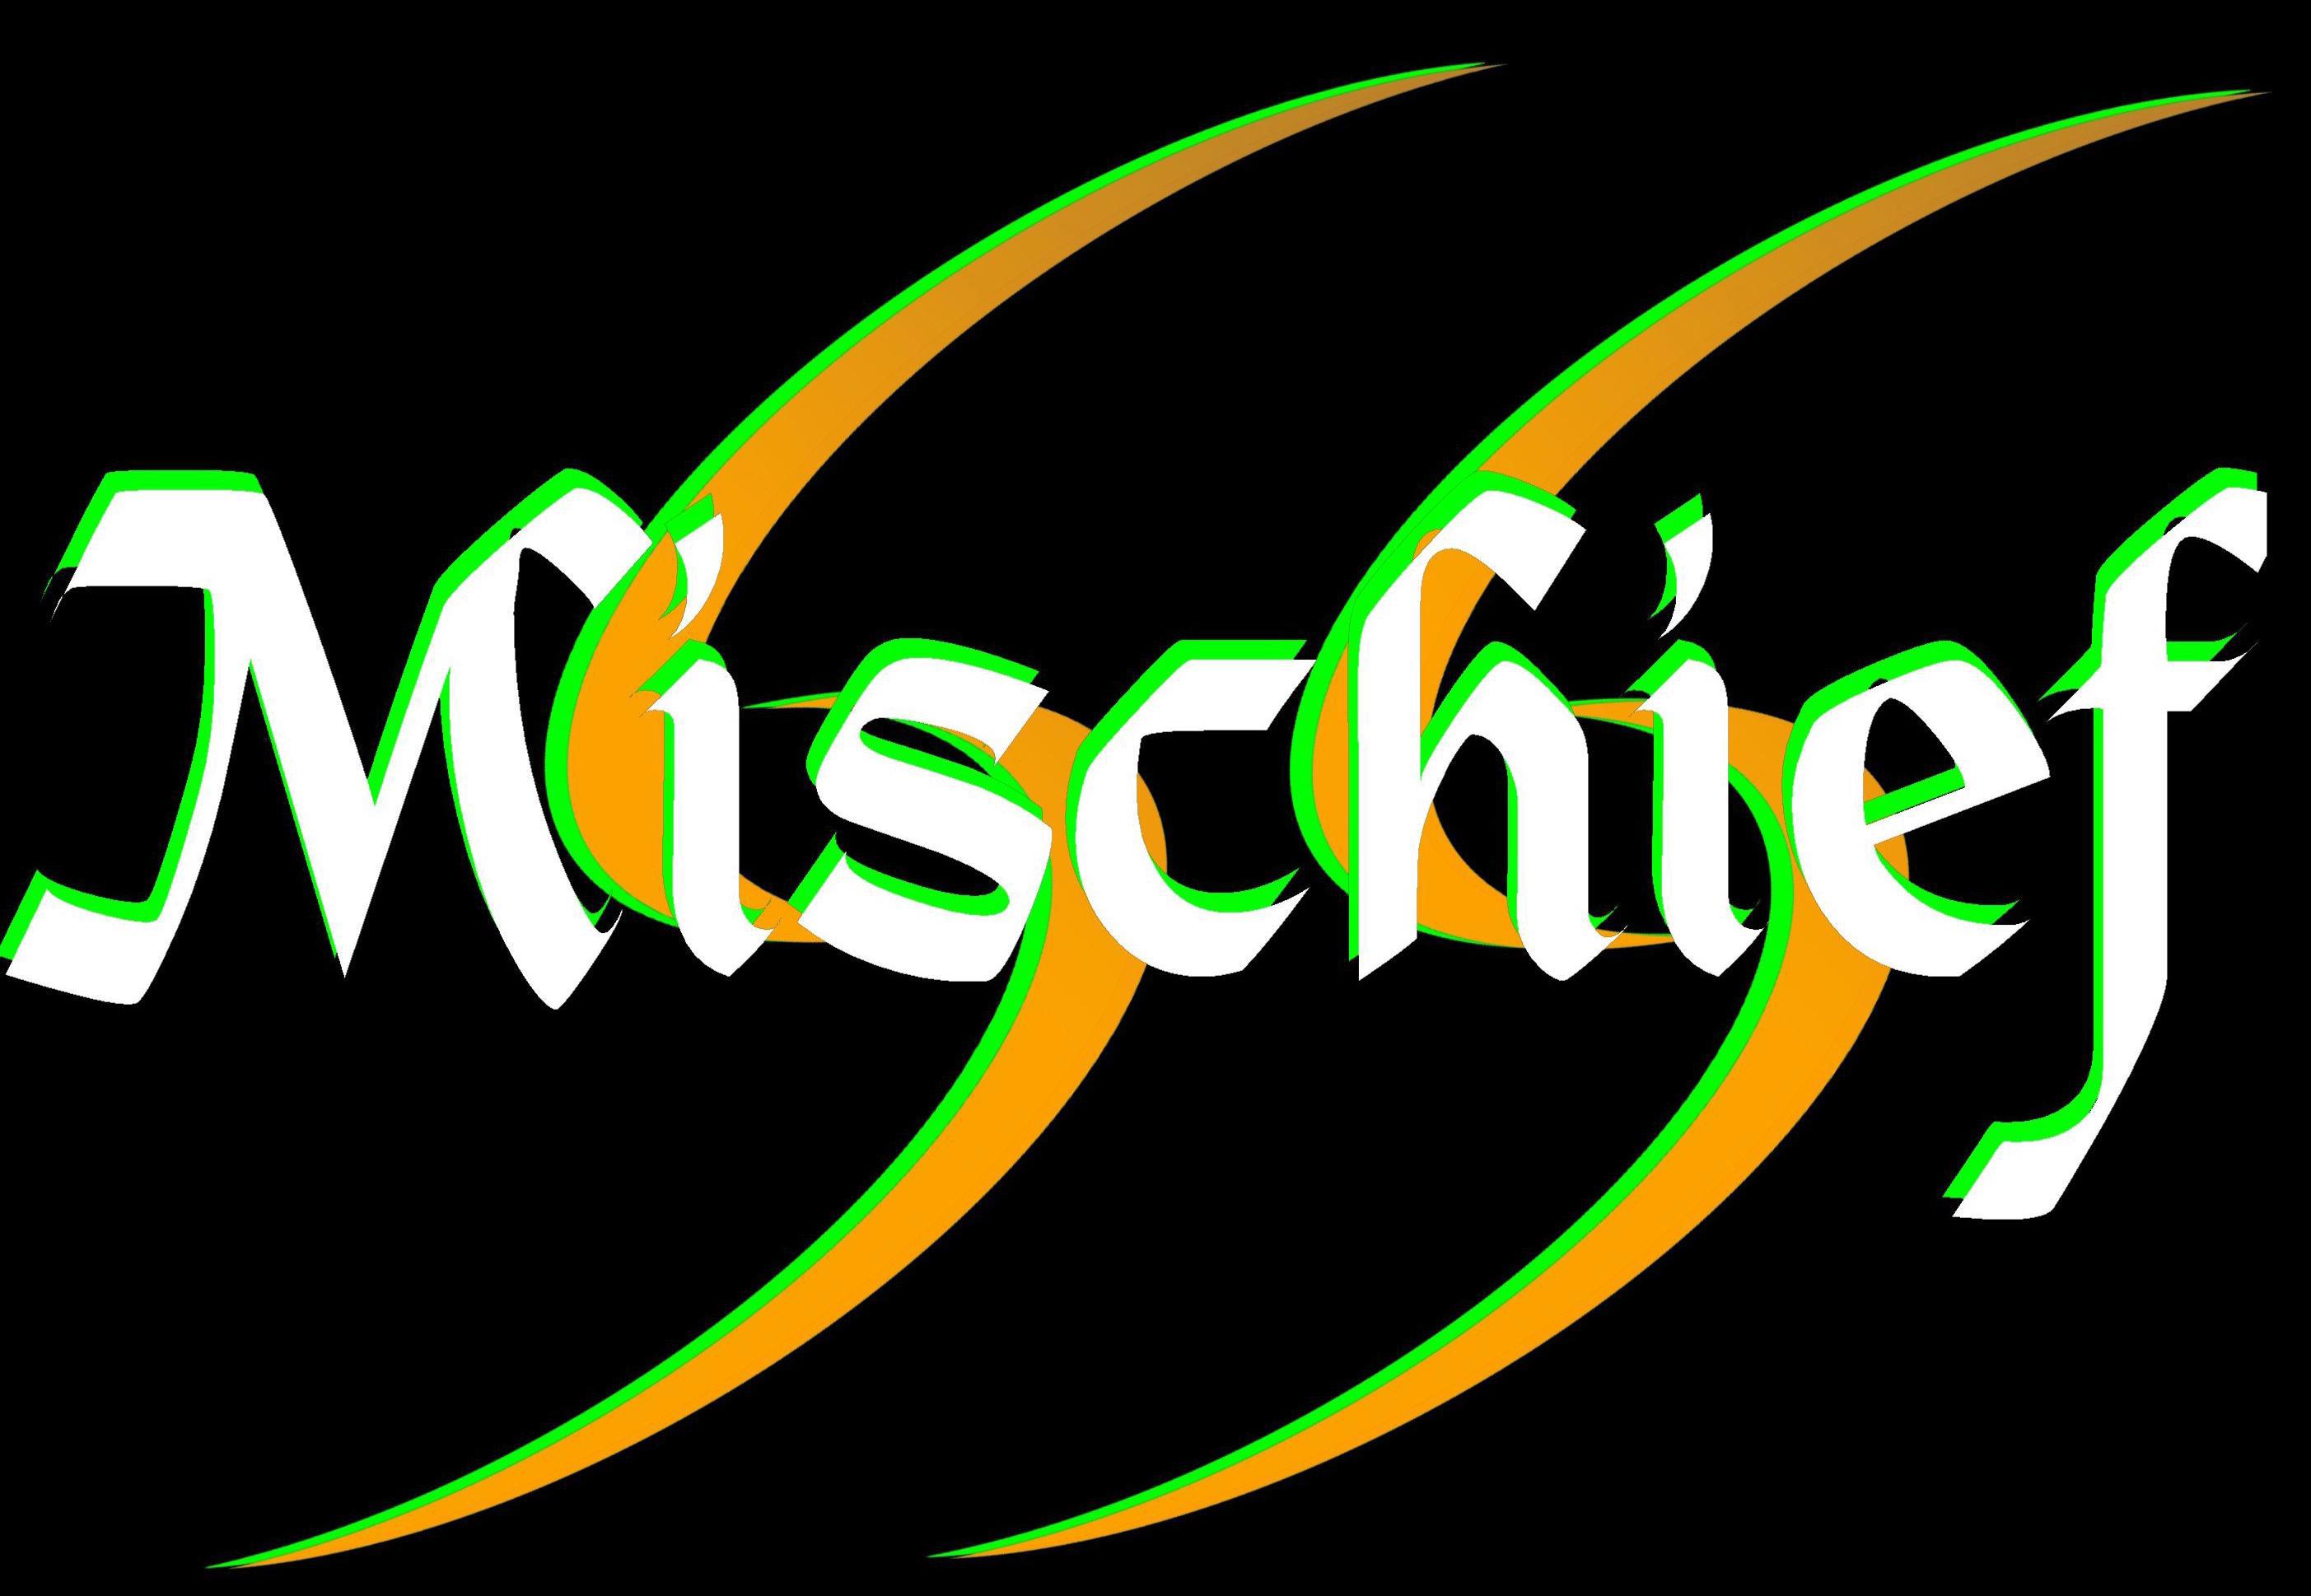 MISCHIEF